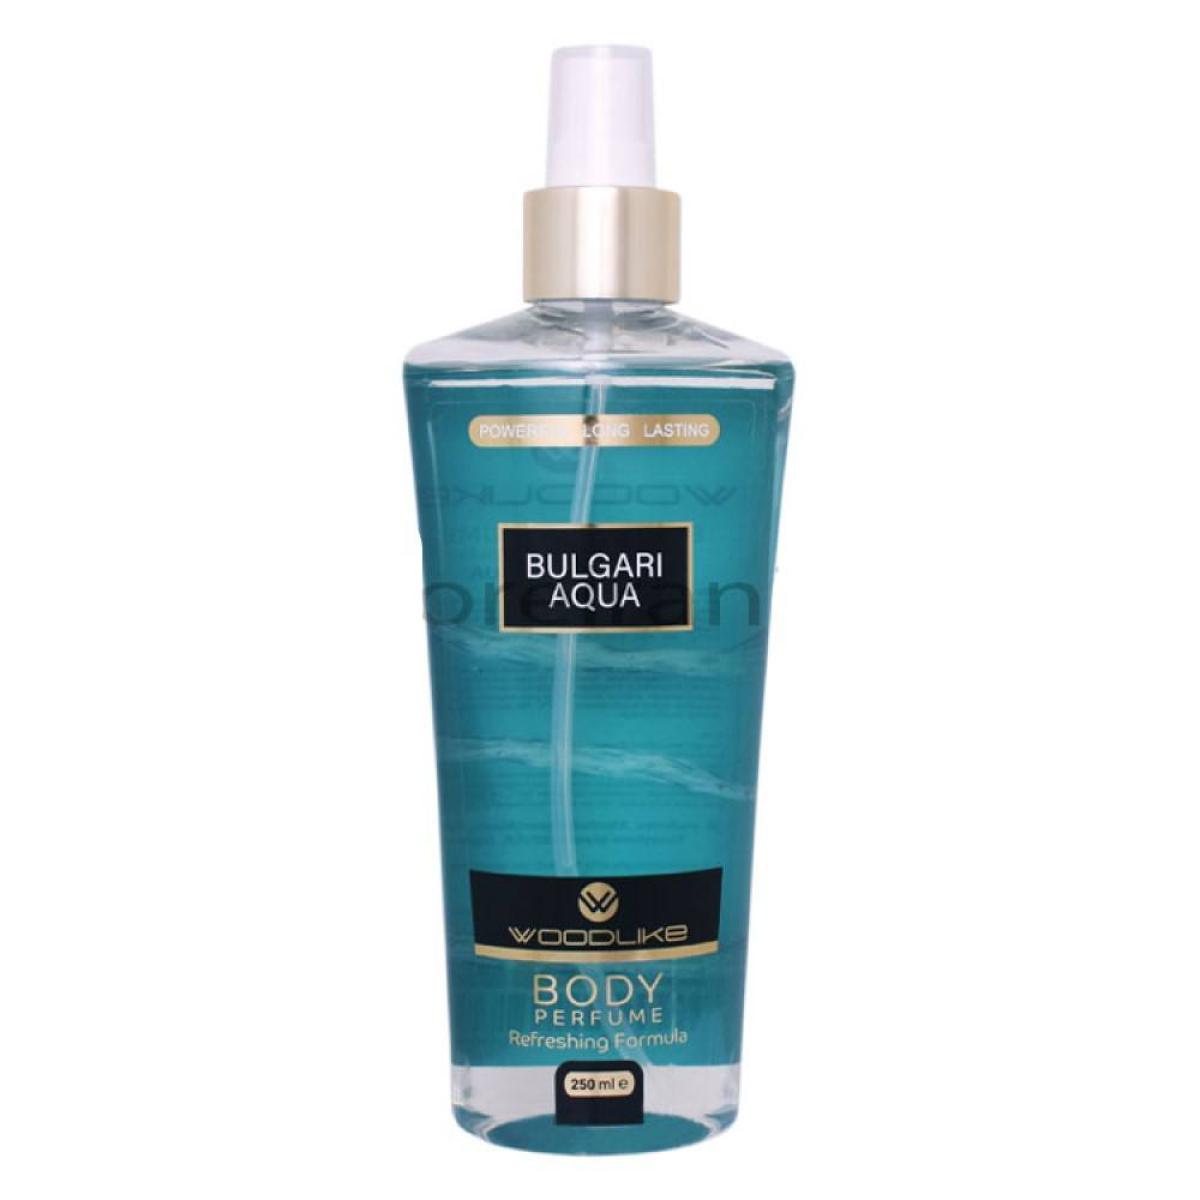 بادی اسپلش مردانه آکوا بولگاری - Body Perfume bvlgari aqua